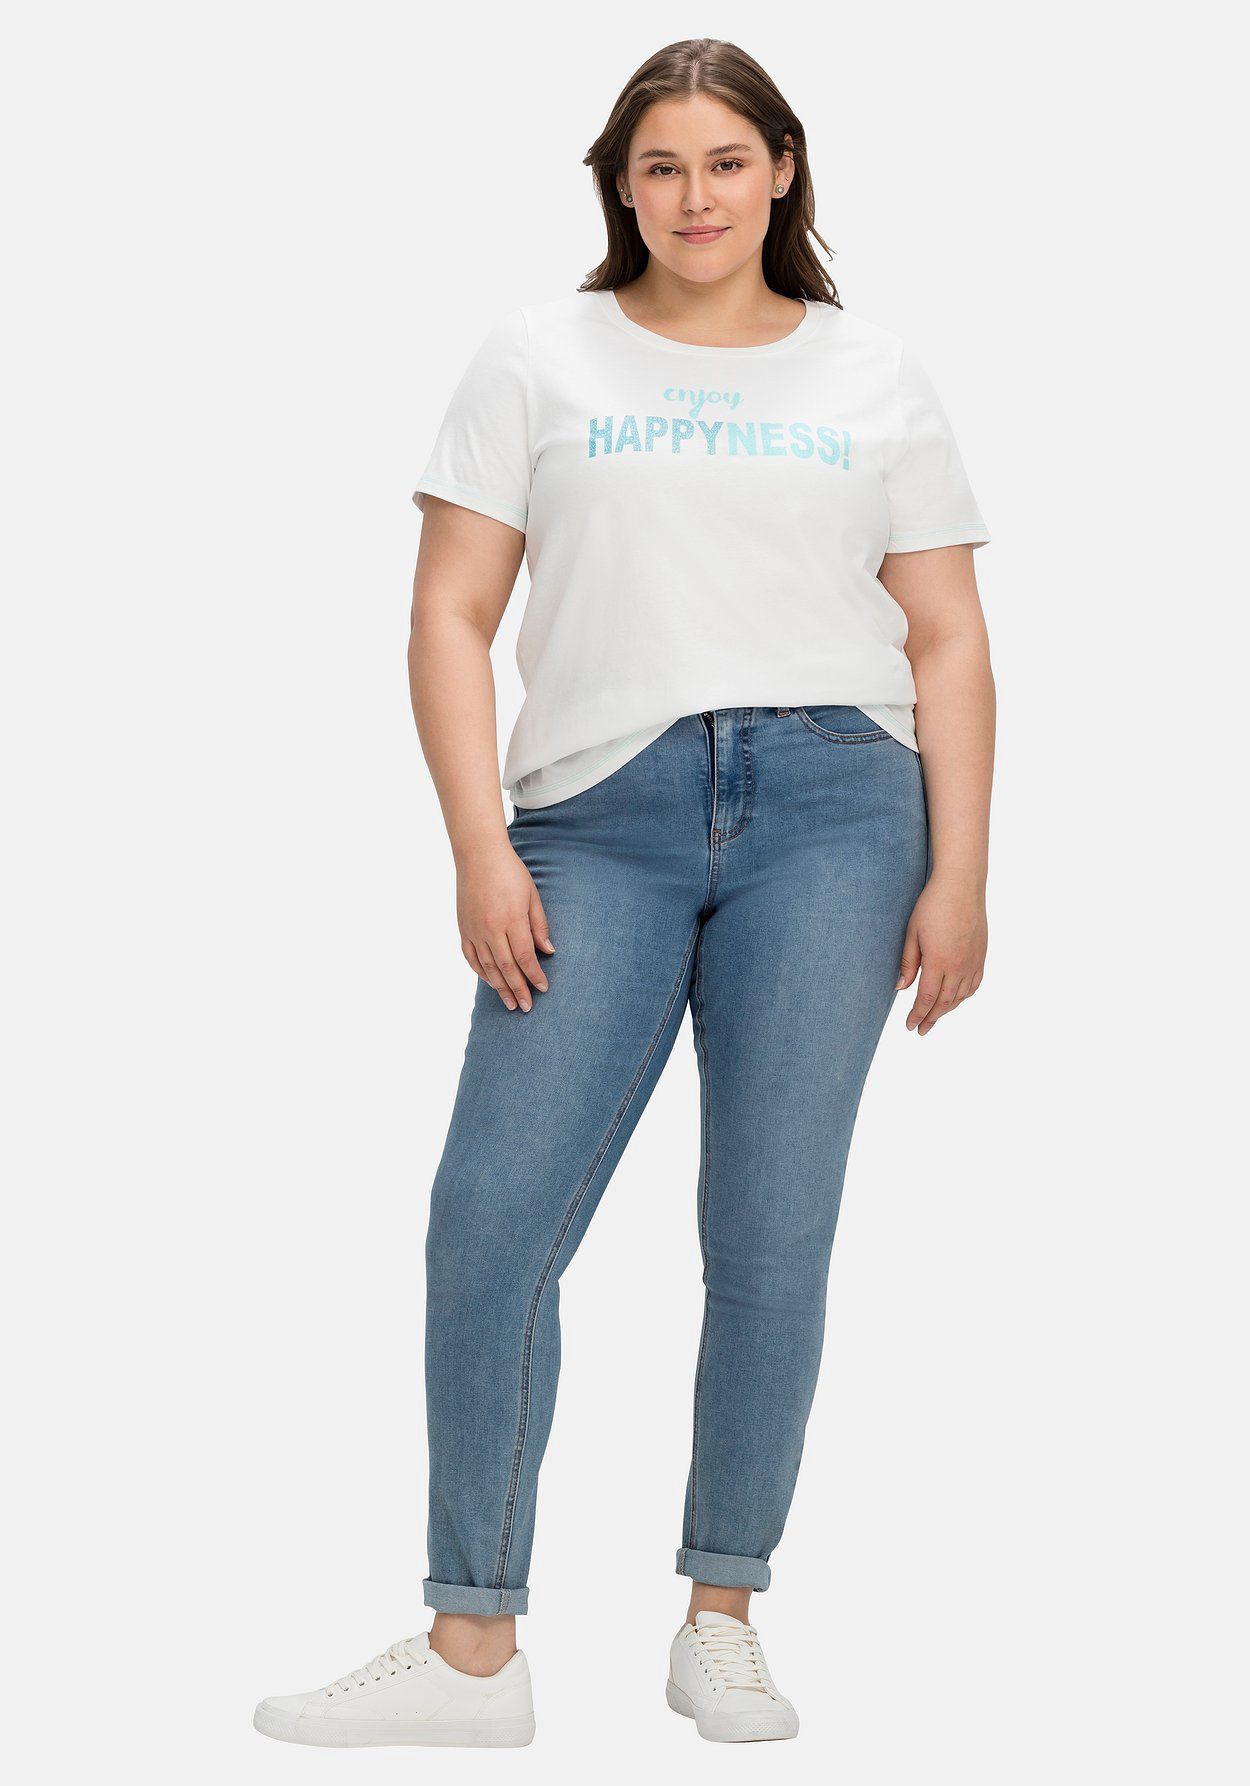 sheego Jerseyshirt mit Wordingprint, leicht tailliert | GALERIA